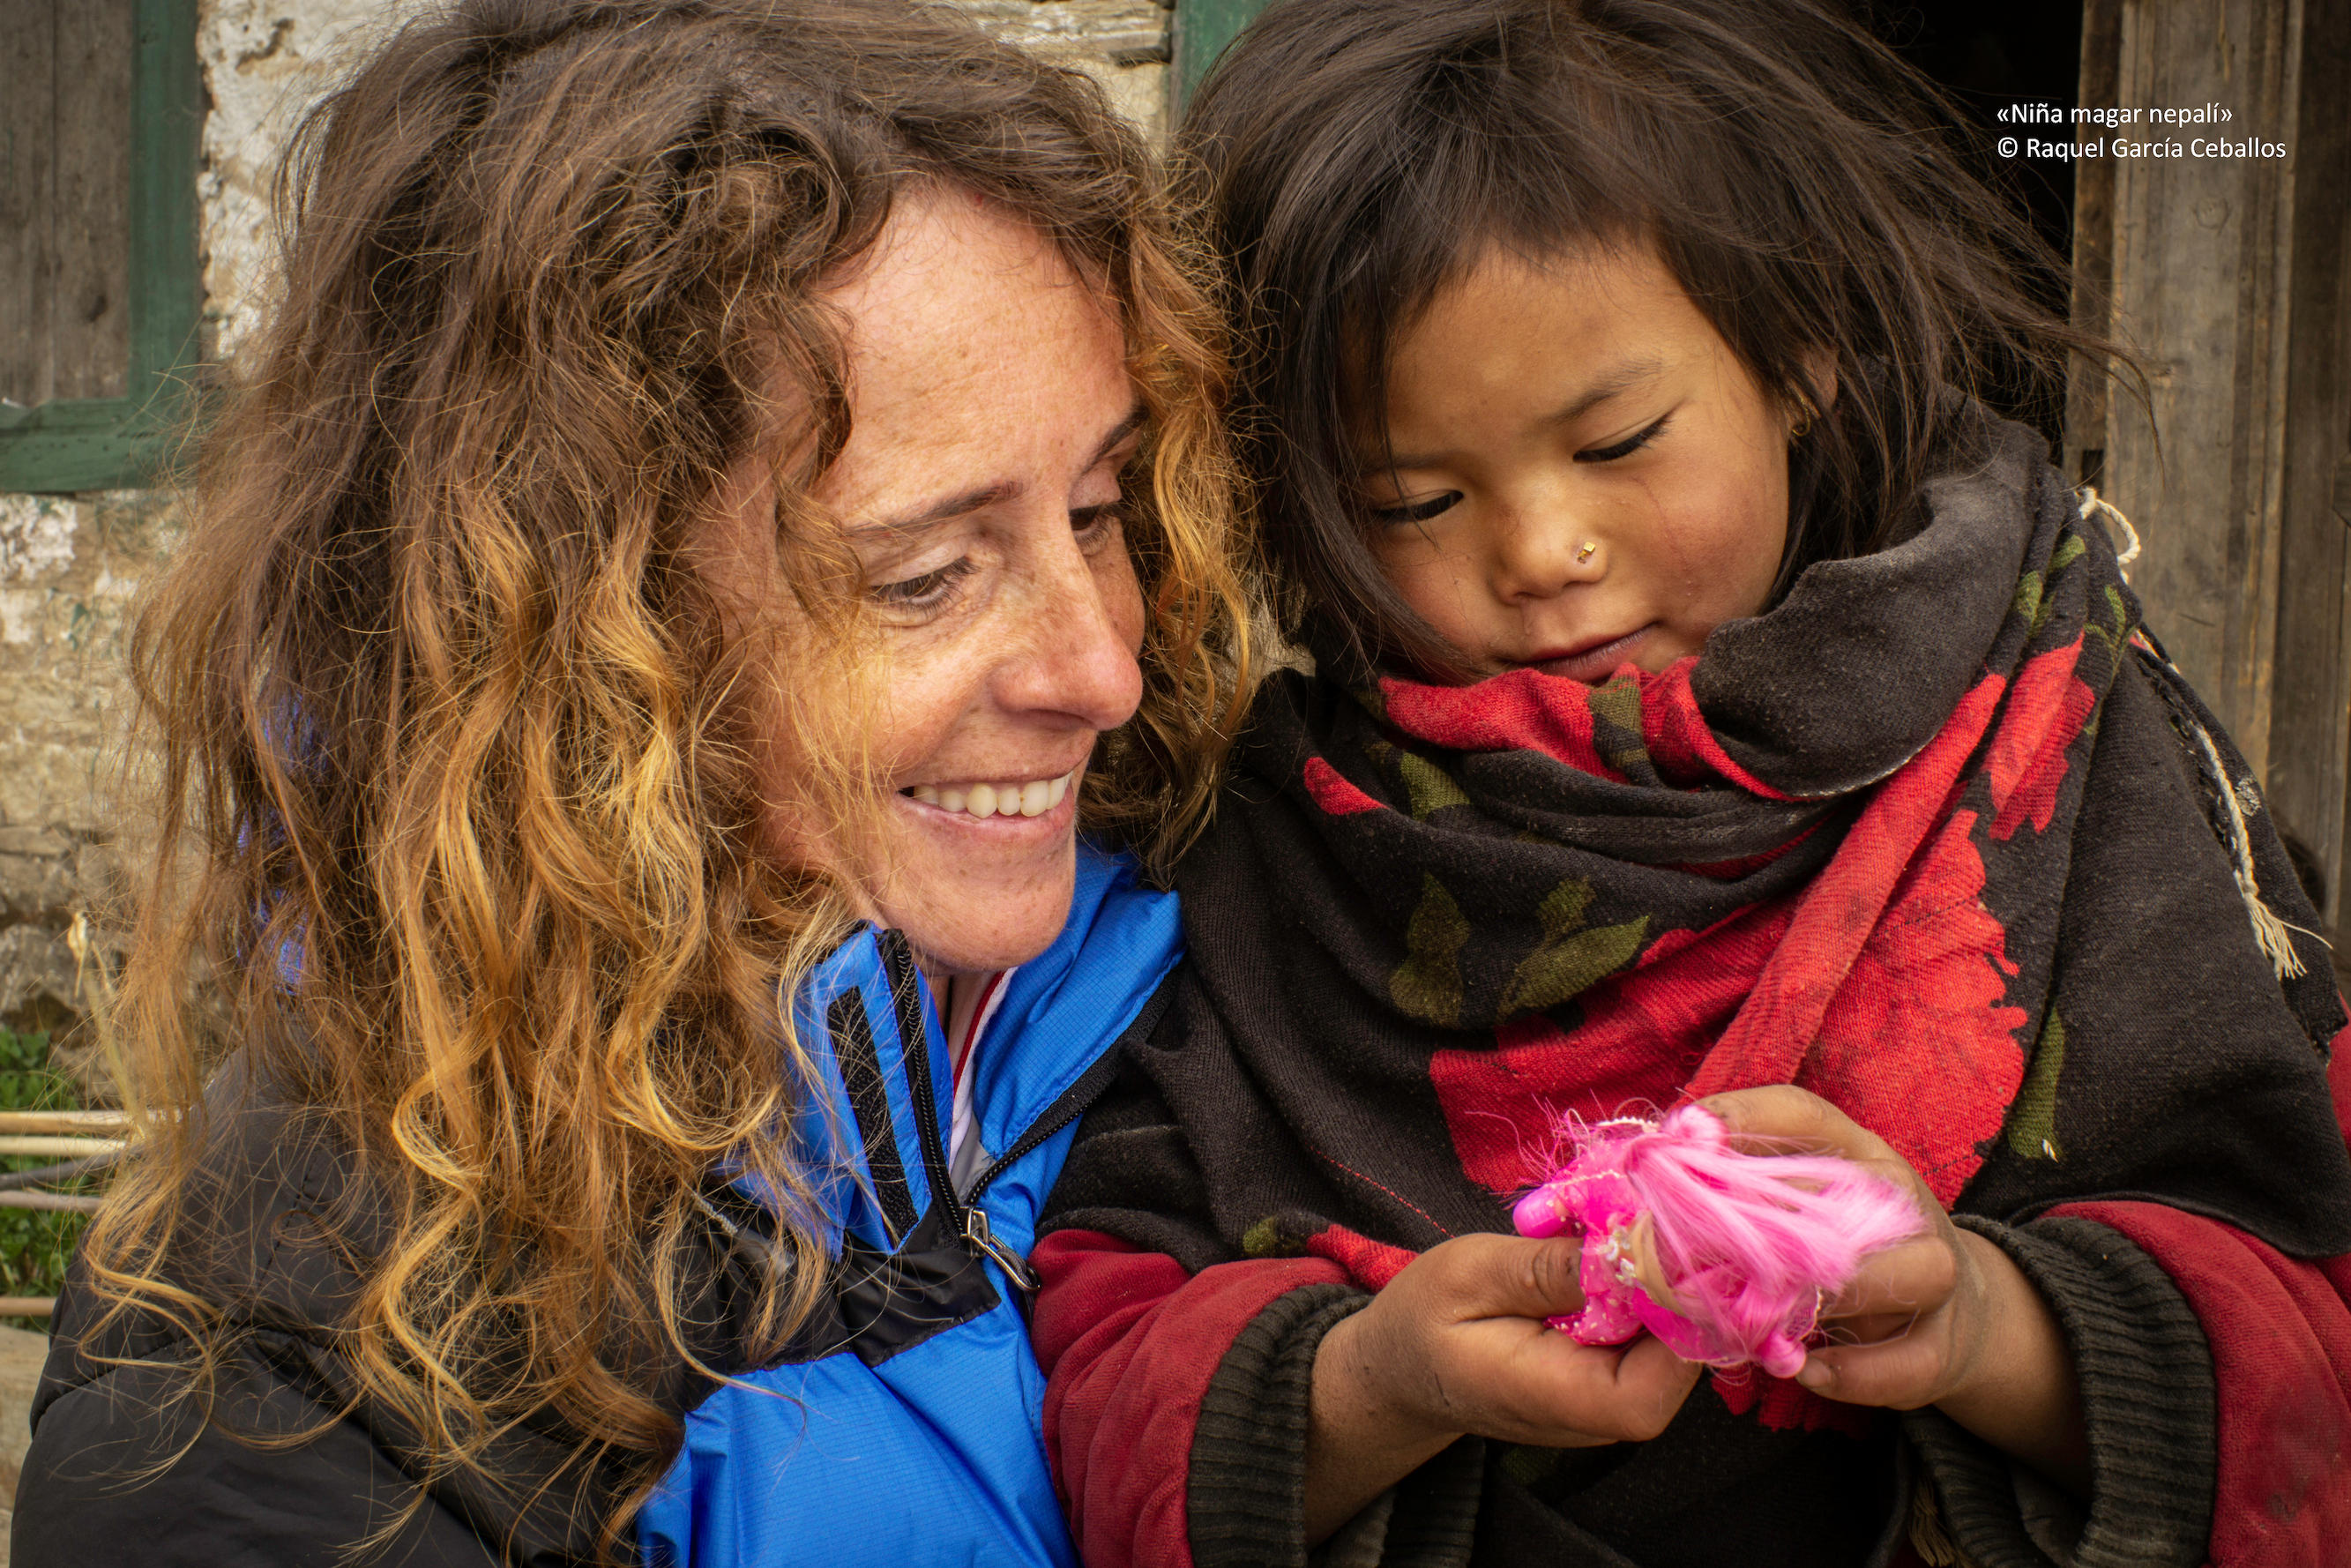 Raquel aparece en la parte izquierda de la foto sosteniendo a una niña nepalí que aparece a la derecha y sostiene una muñeca con las manos. Es un primer plano y ambas sonríen observando la muñeca.